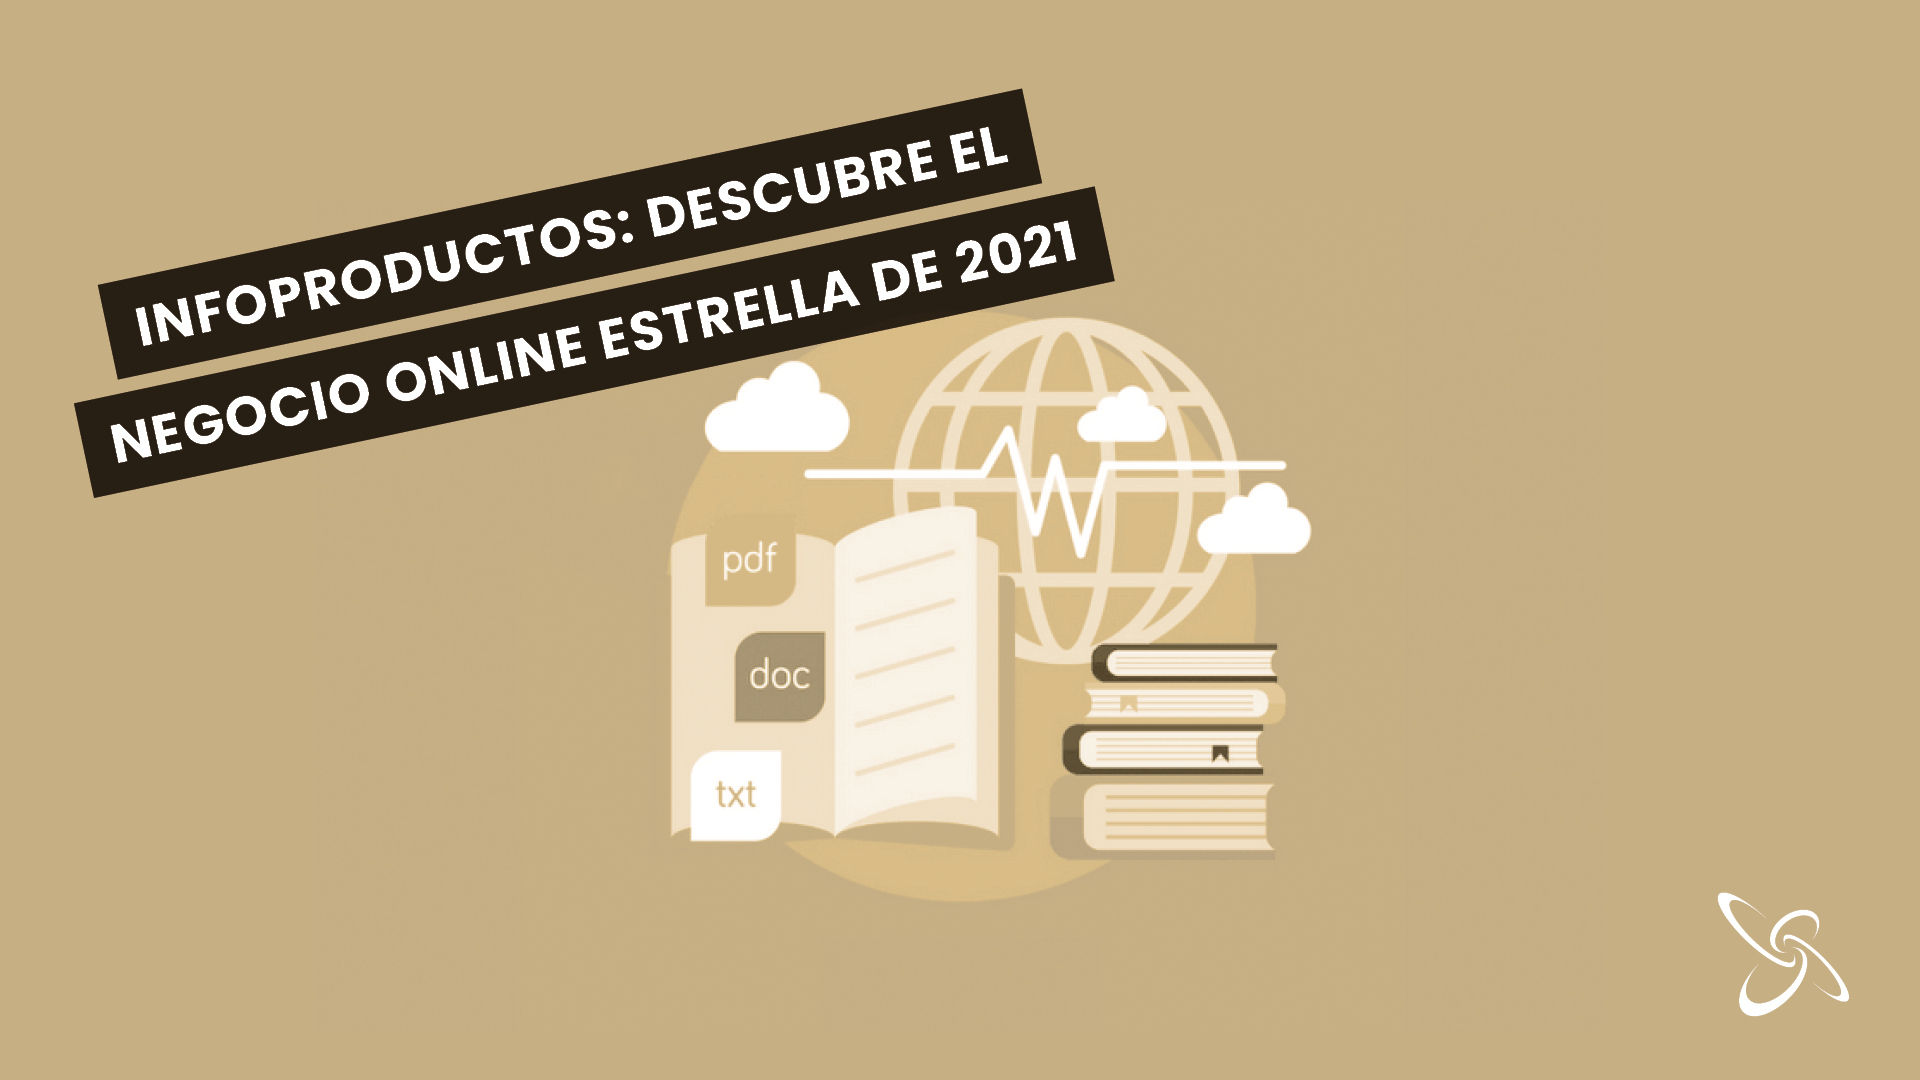 Infoproductes: Descobreix el negoci online estrella de 2021